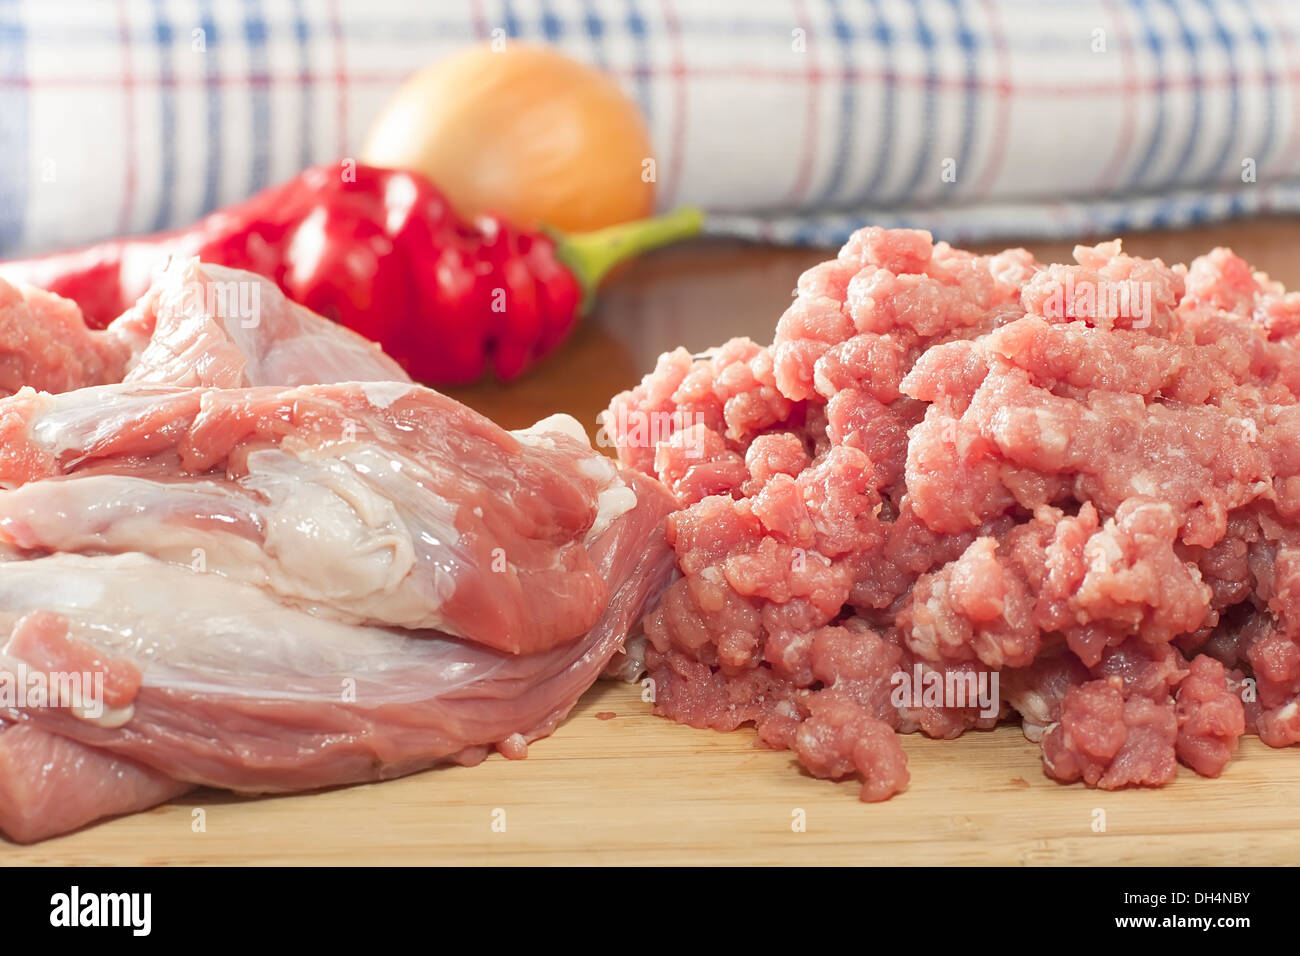 Interi pezzi di carne di manzo crudo con carne macinata su un tagliere Foto Stock